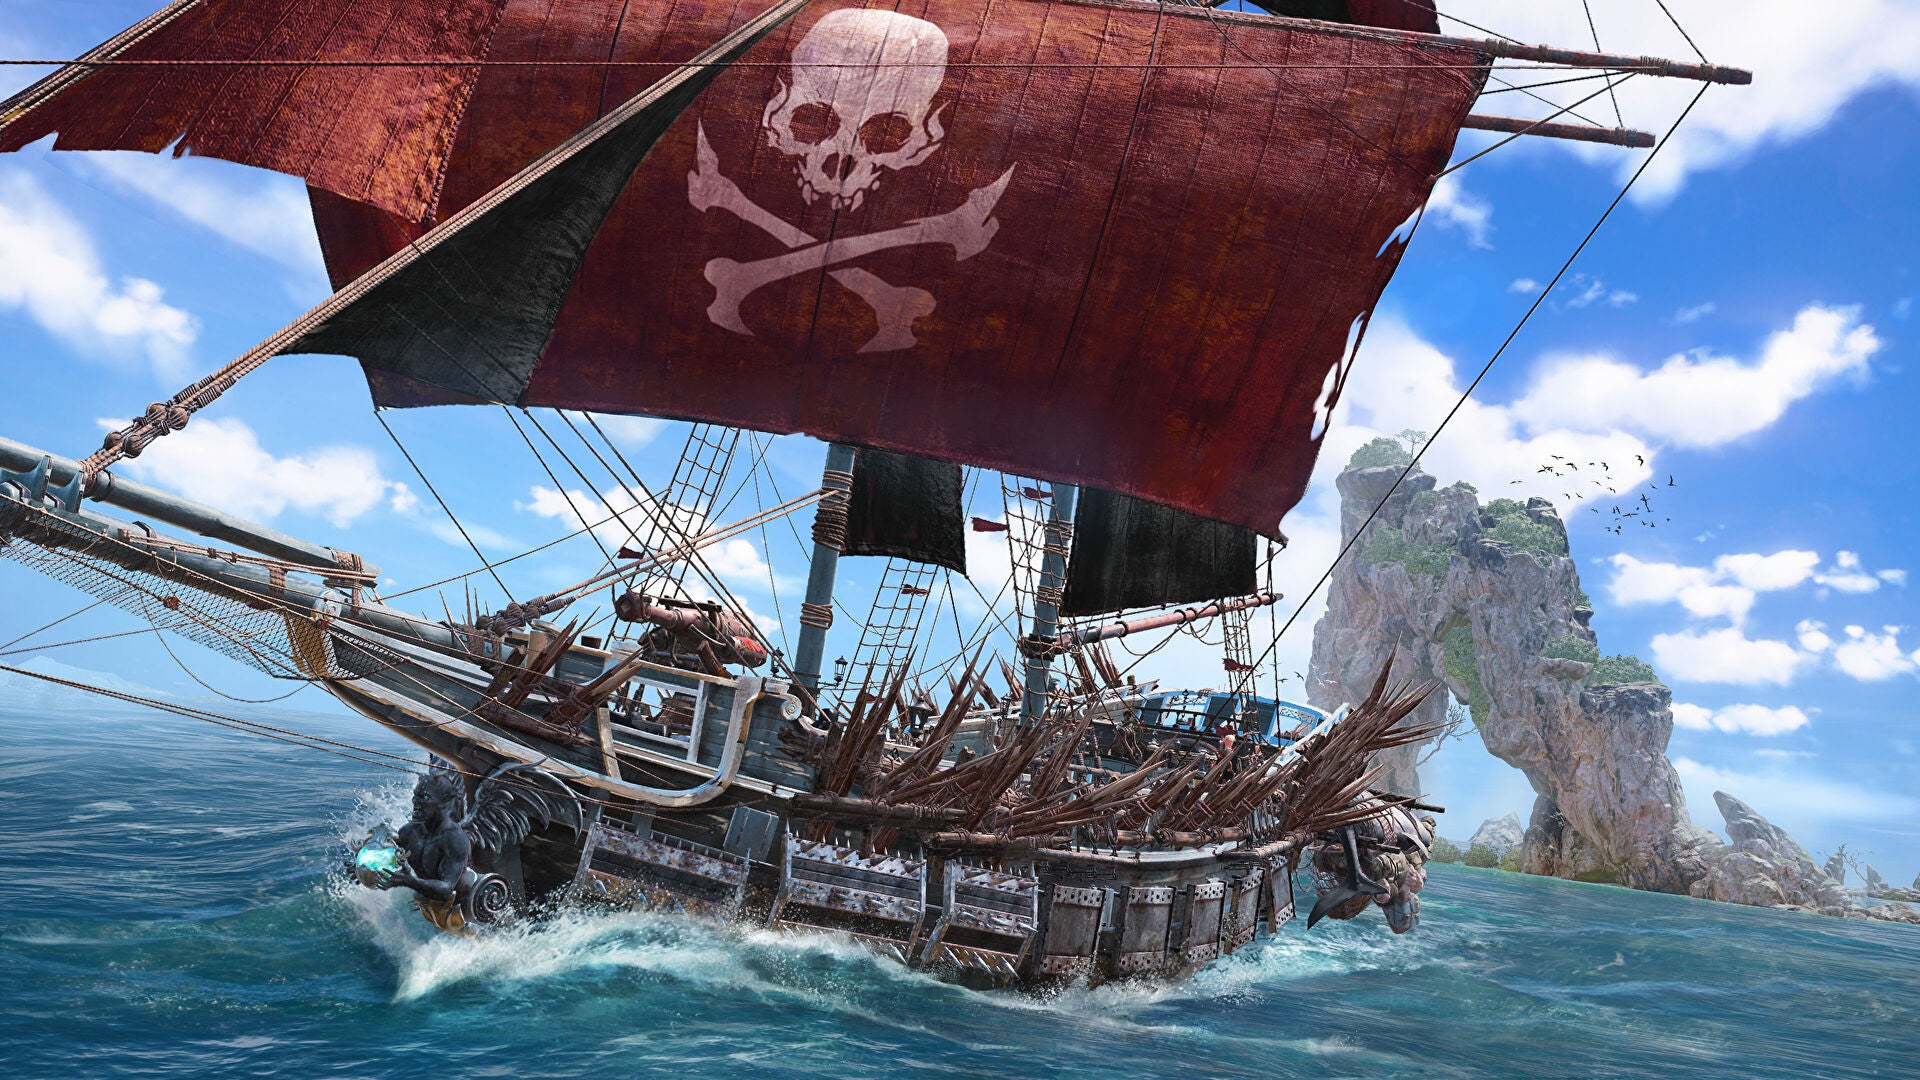 Un'immagine promozionale di Skull and Bones che mostra una grande nave di legno con vele cremisi che corre attraverso l'oceano sotto un cielo azzurro brillante.